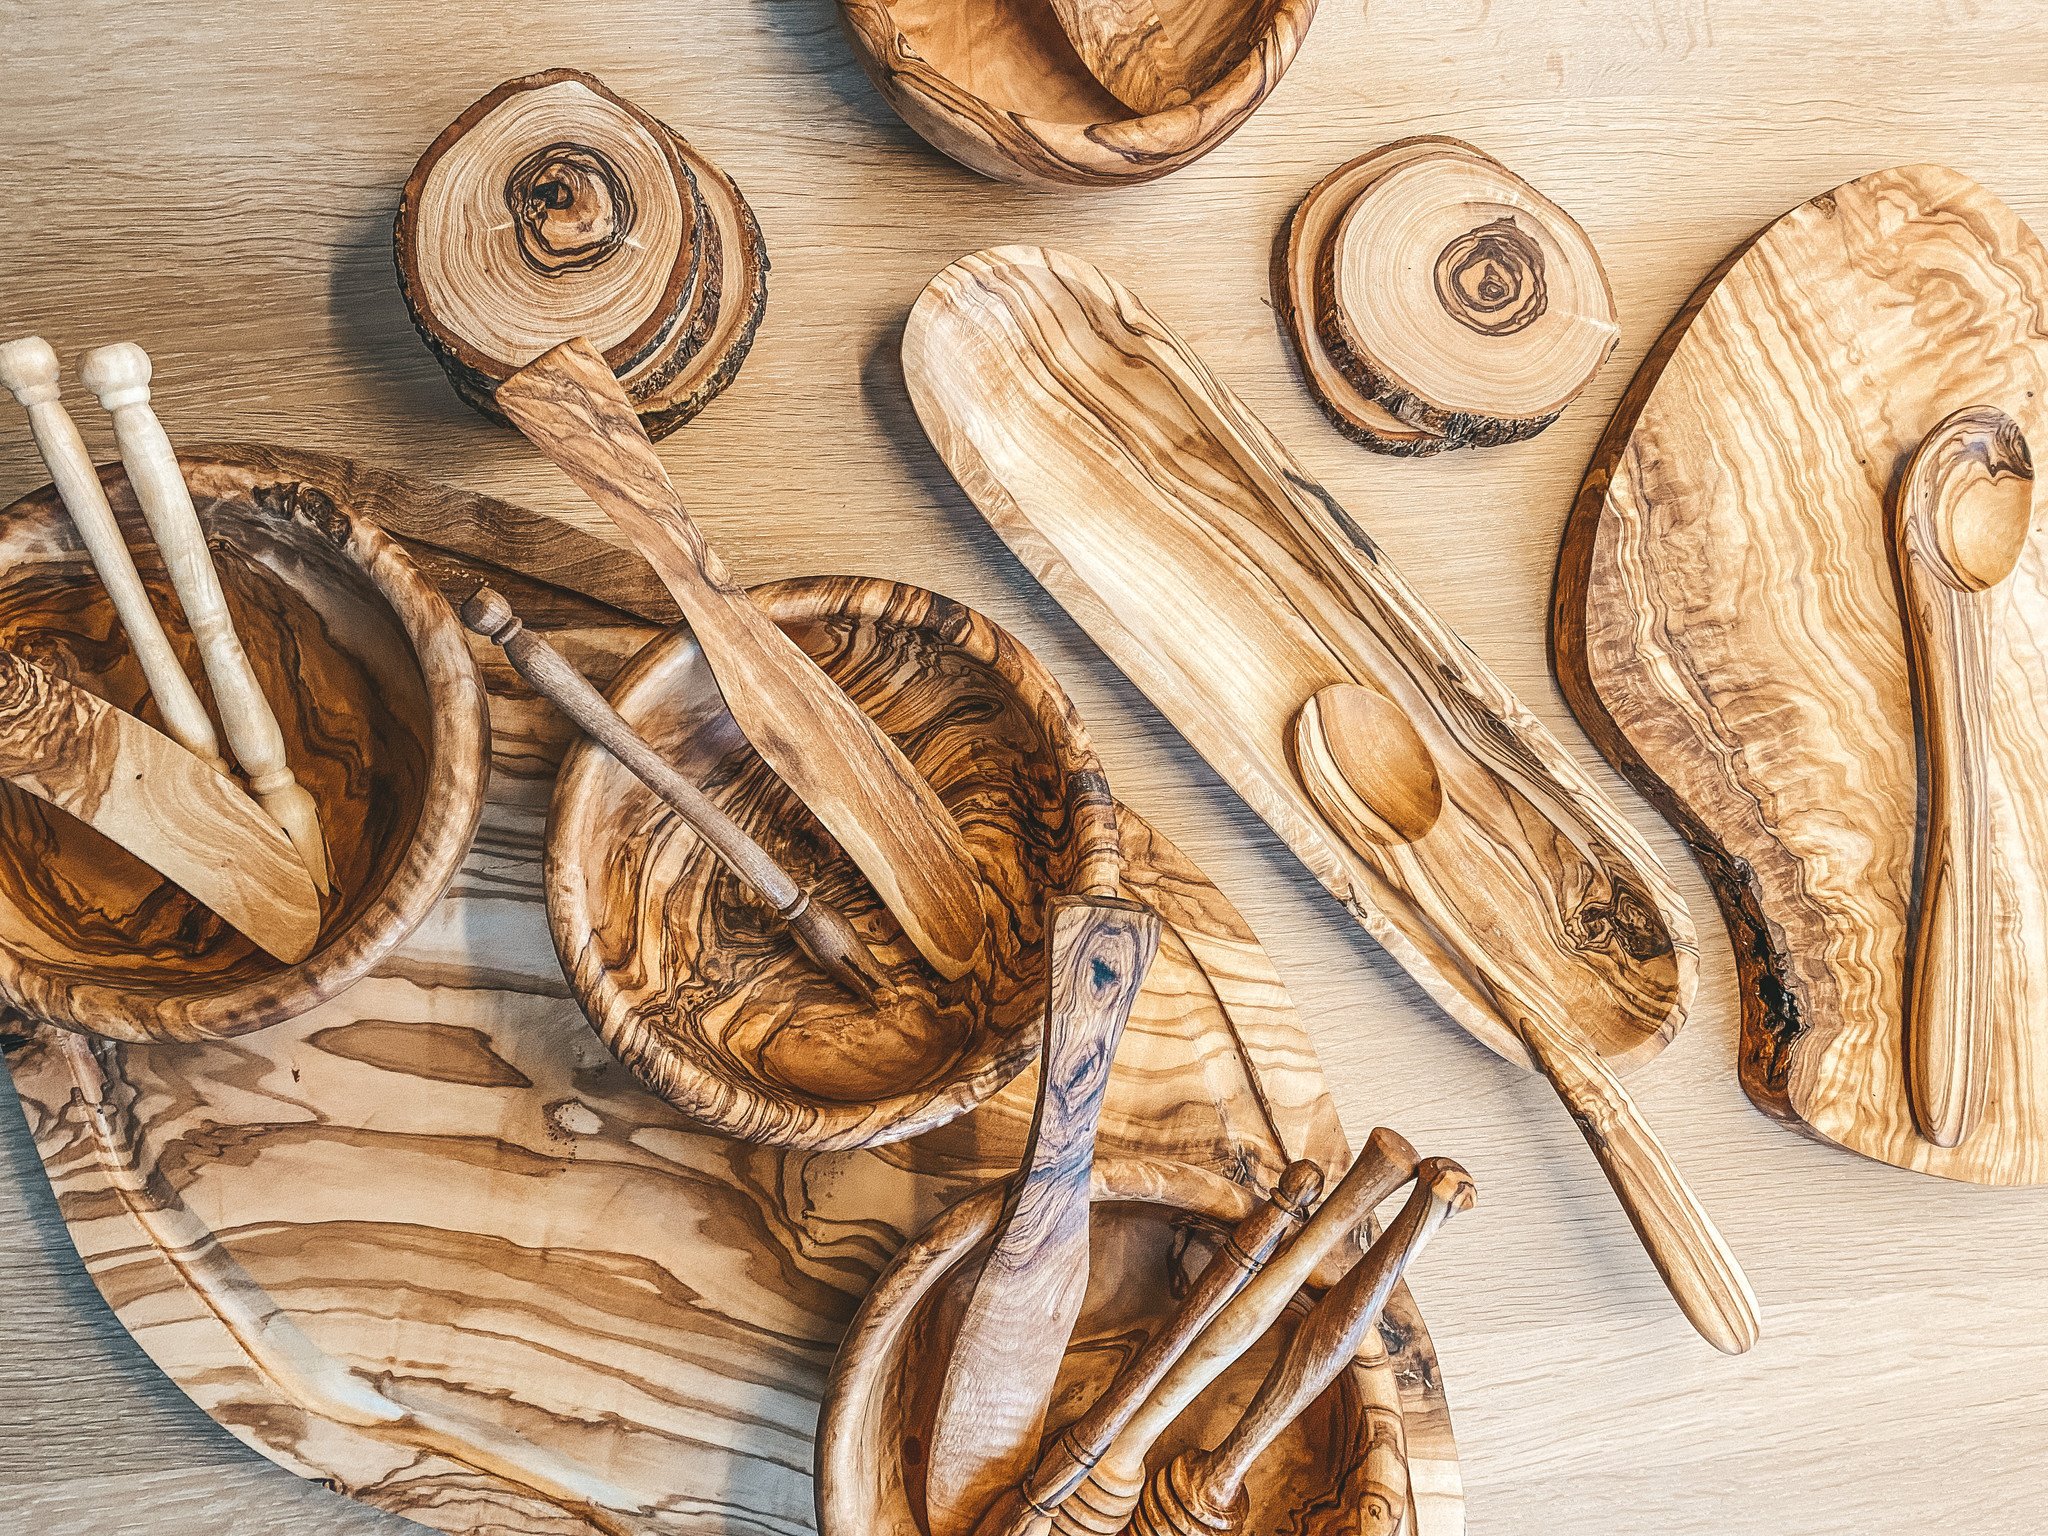 Natuurlijke tips: Hoe onderhoud je houten keukengerei?